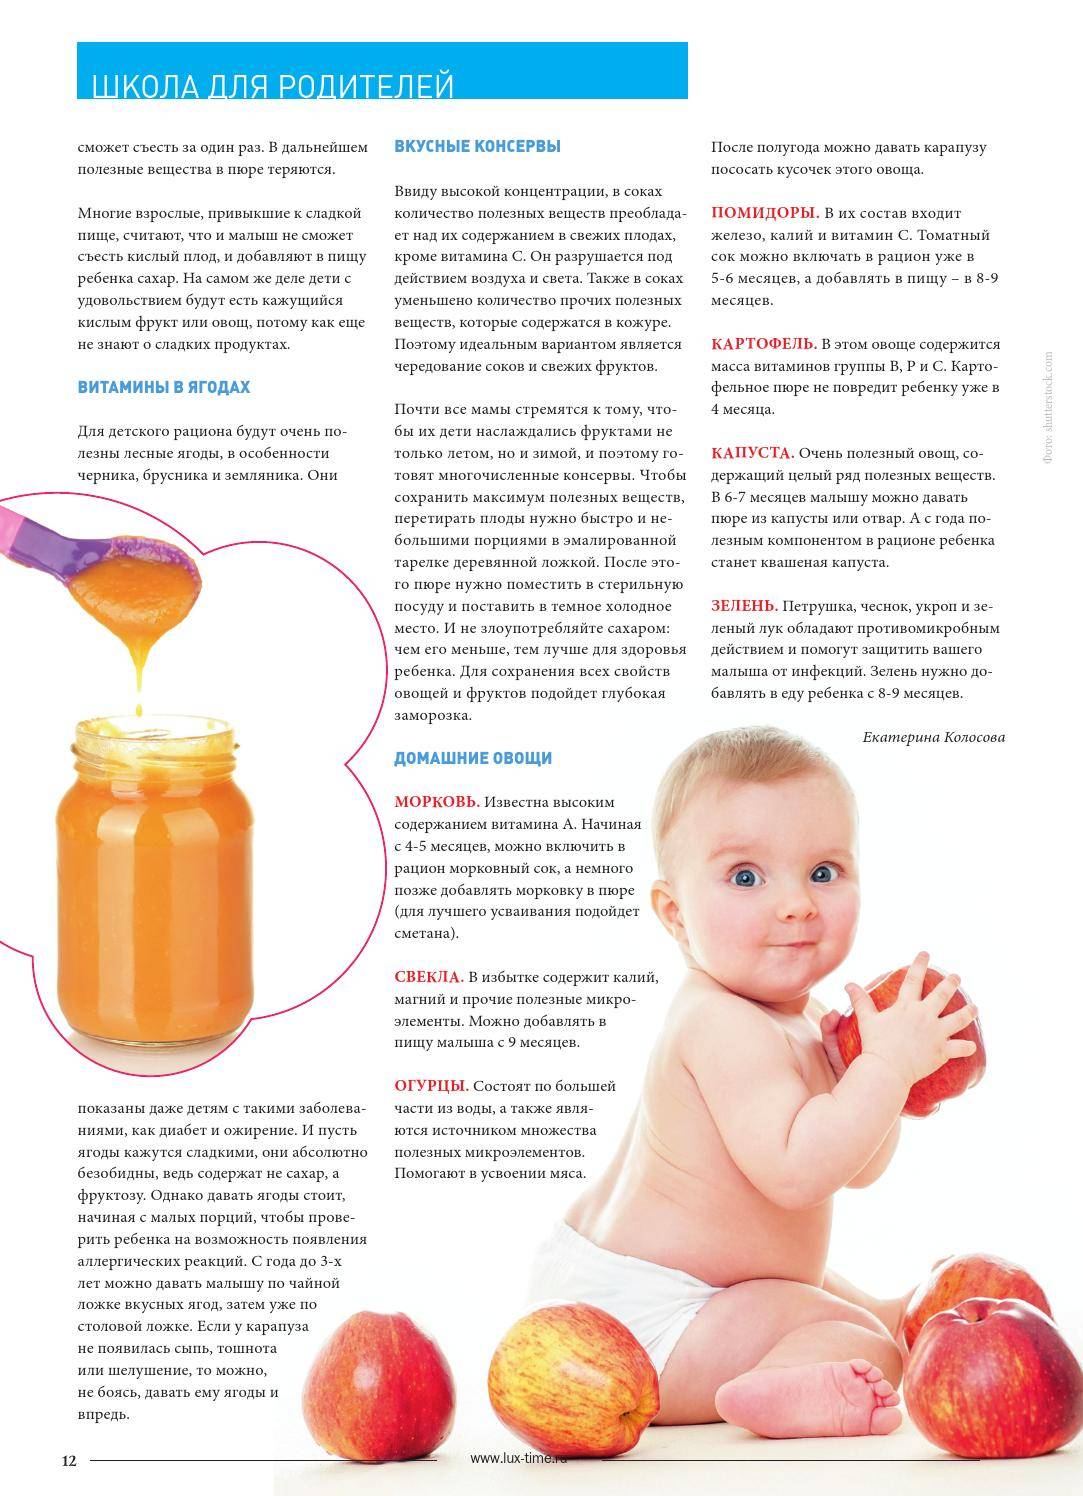 Морковный сок: польза и вред + 3 супер-рецепта для детей